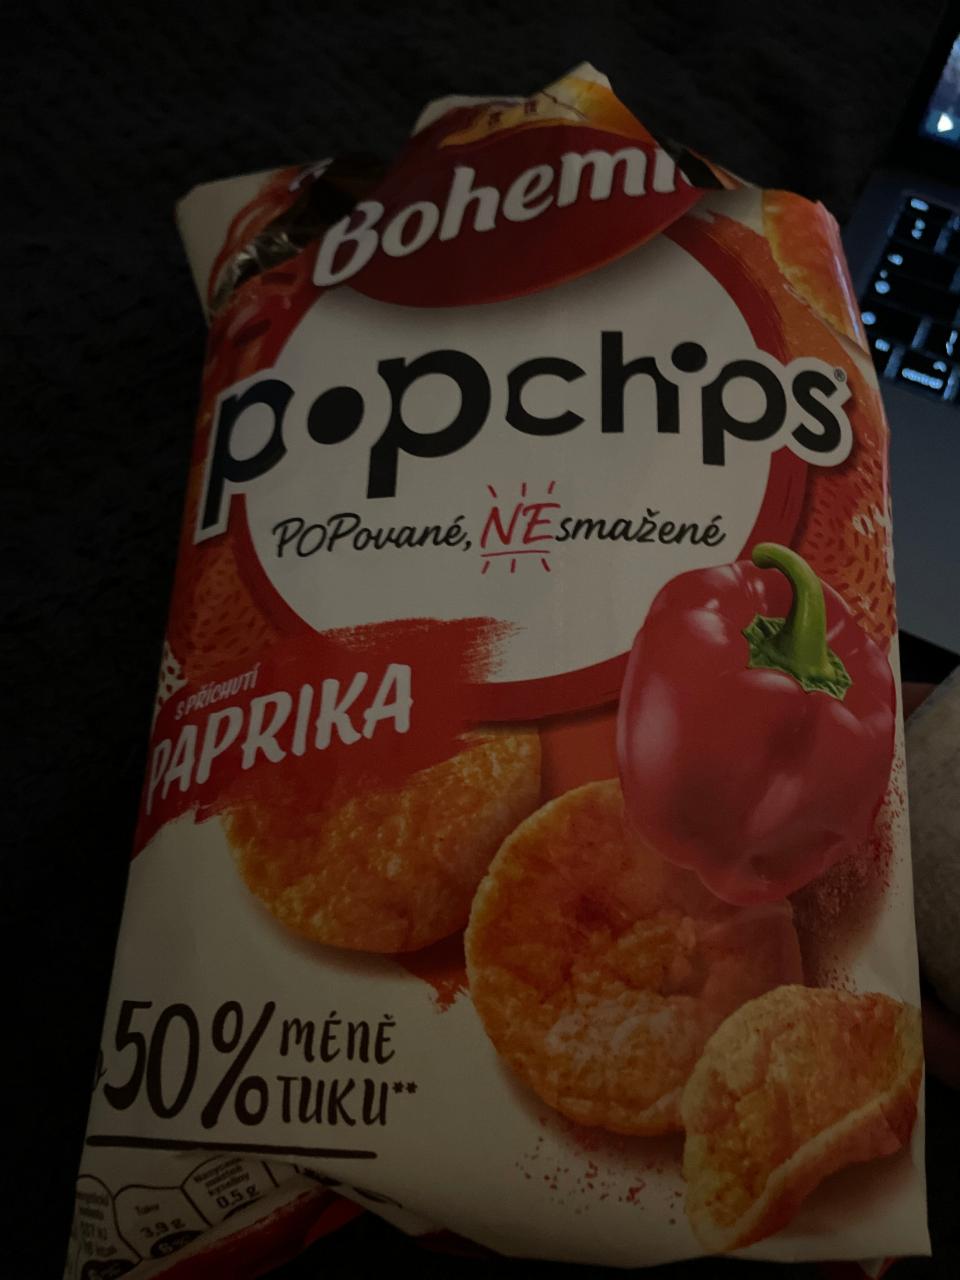 Фото - Popchips s příchutí paprika popované nesmažené Bohemia